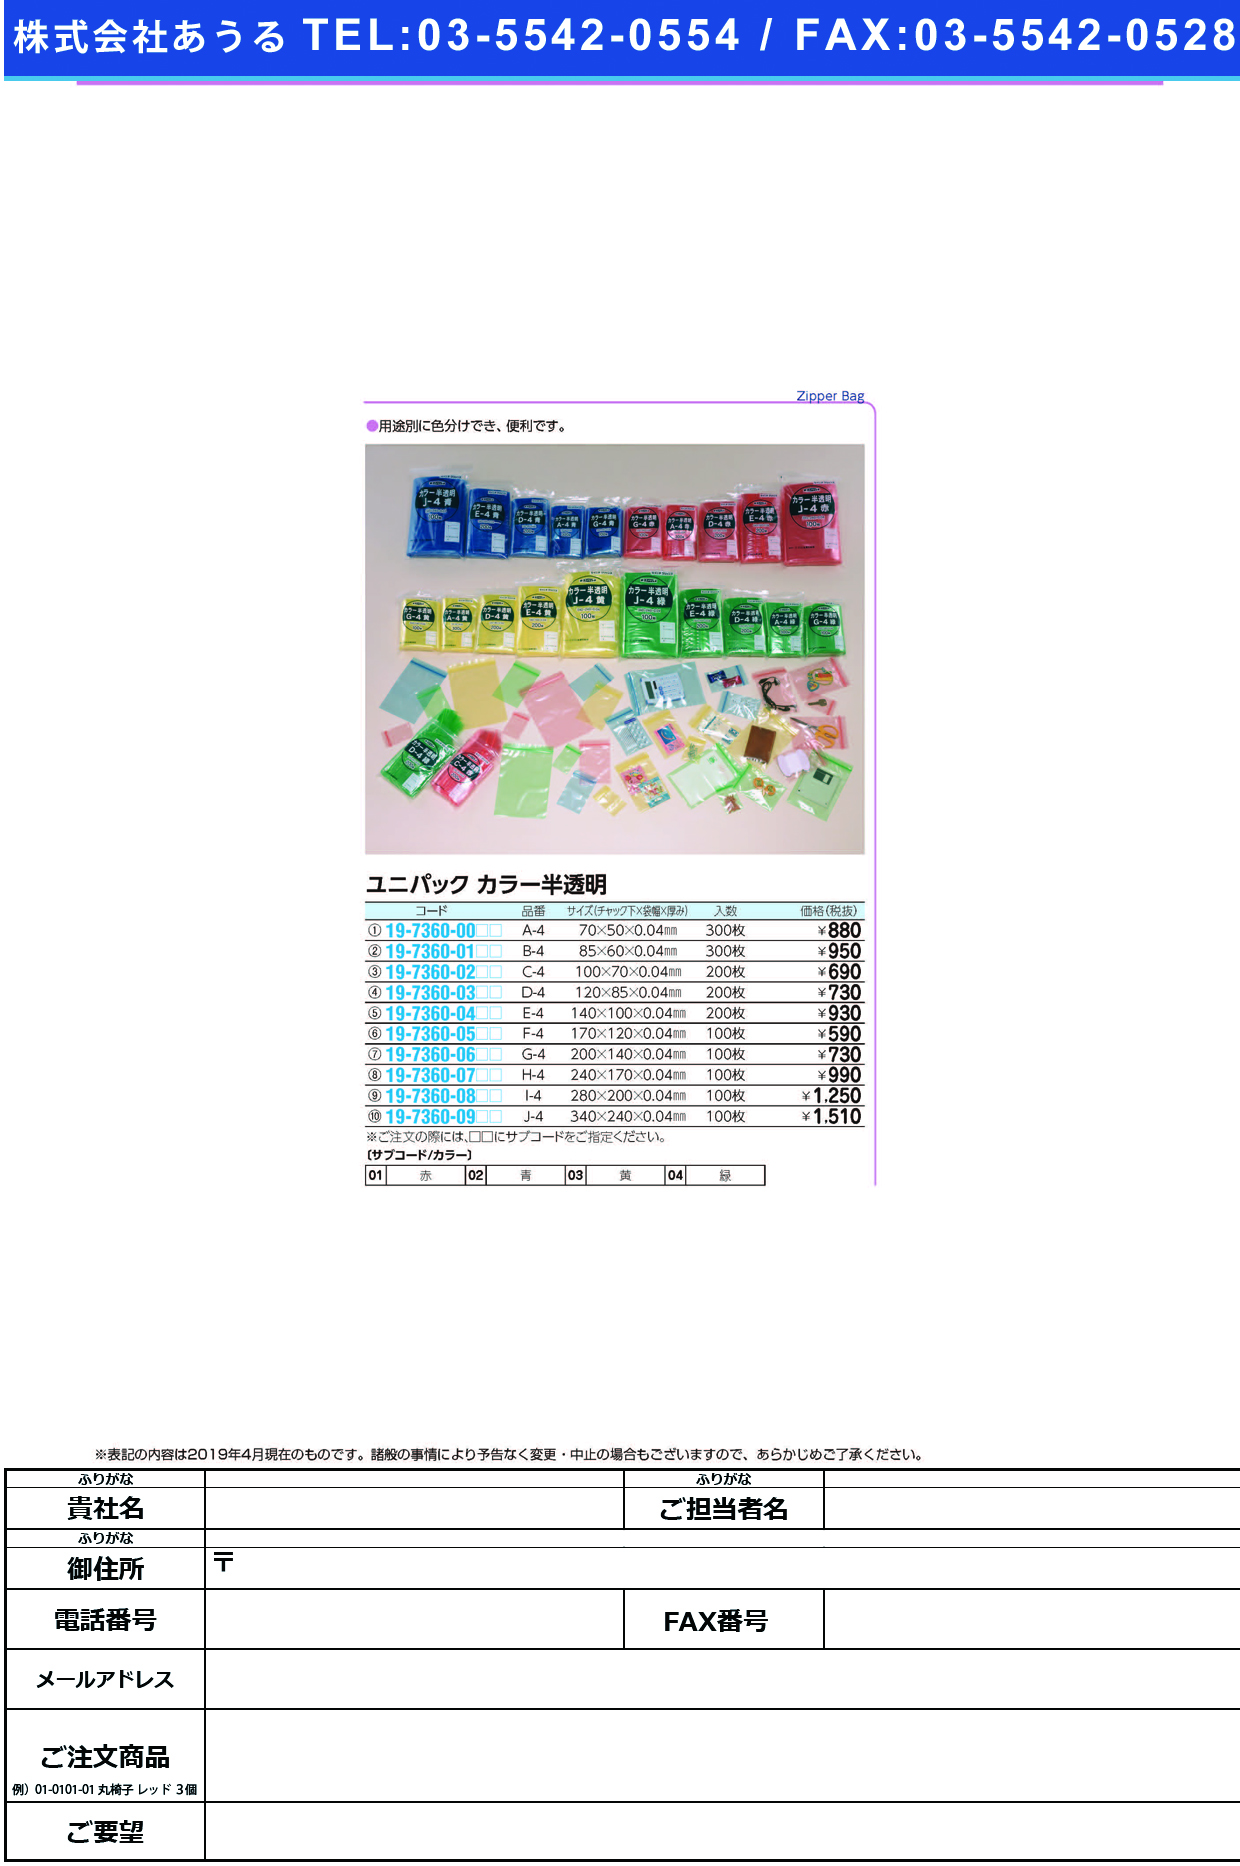 (19-7360-00)ユニパックカラー半透明 A-4(300ﾏｲｲﾘ) ﾕﾆﾊﾟｯｸｶﾗｰﾊﾝﾄｳﾒｲ 赤【1袋単位】【2019年カタログ商品】